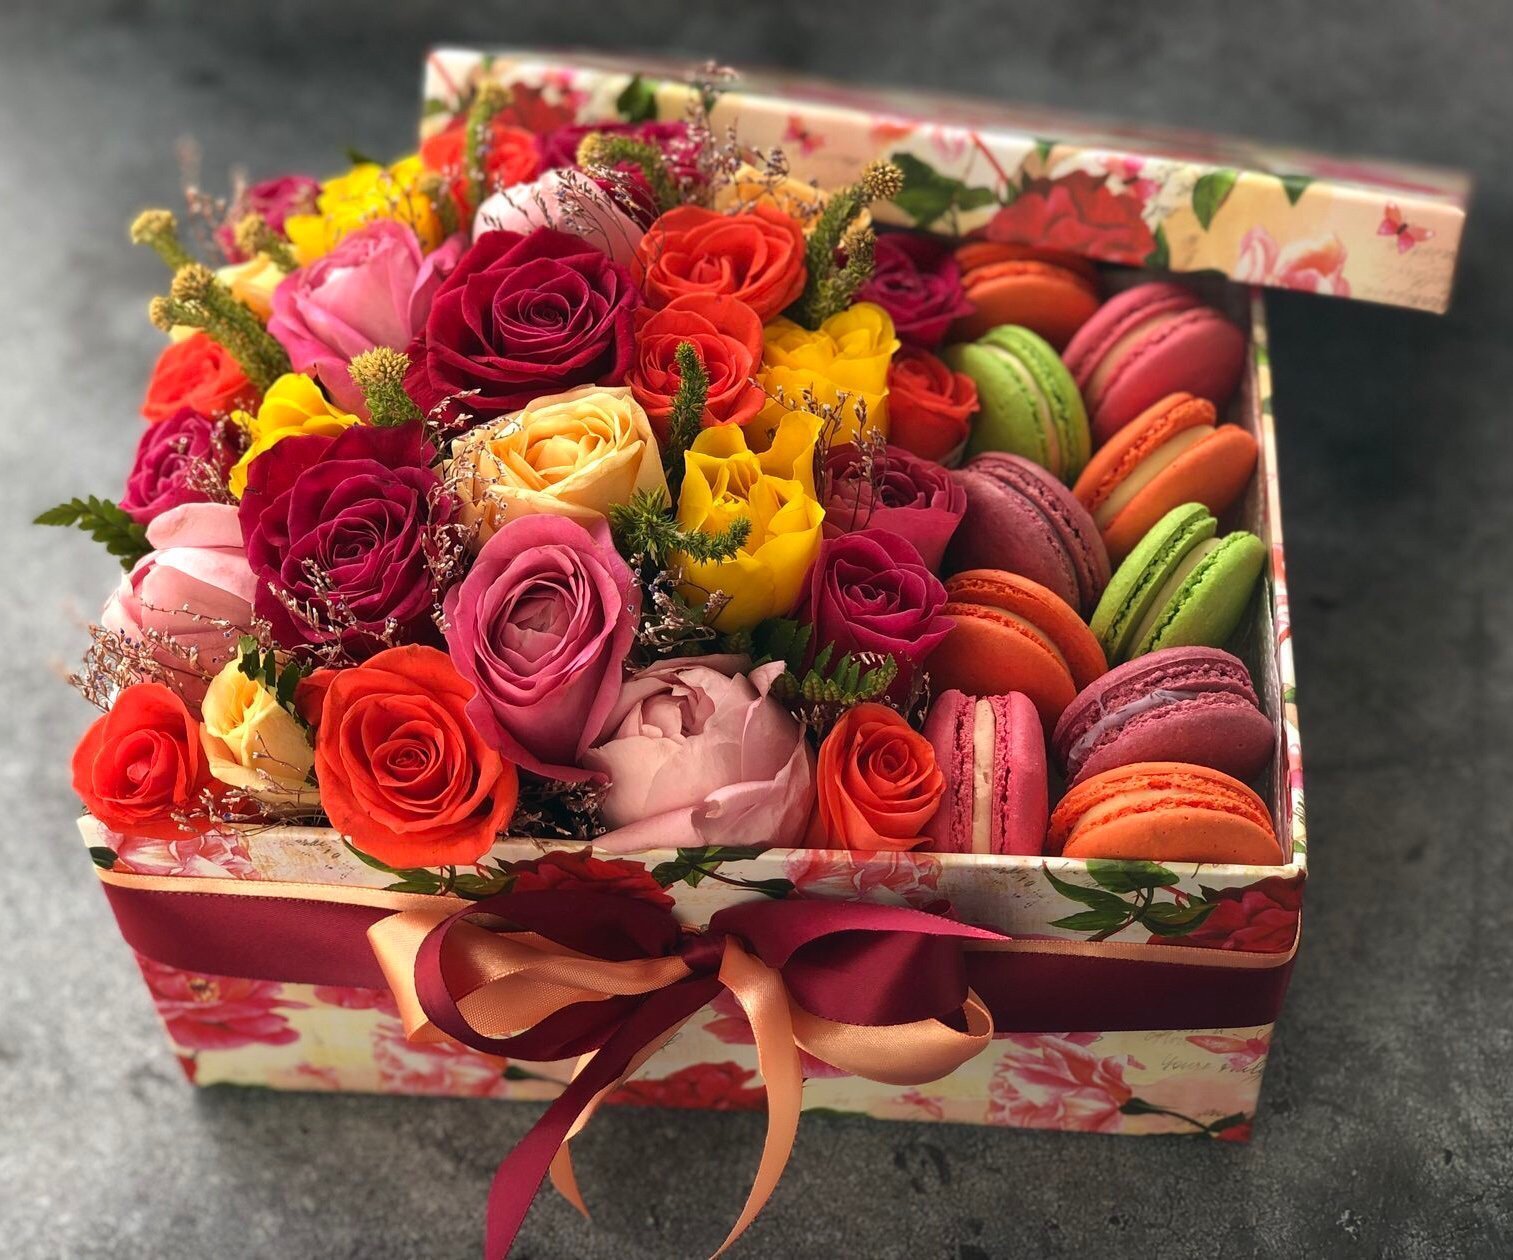 Подарочные букеты цветов. Цветы с конфетами. Красивый букет в подарок. Букет в коробке со сладостями. Коробка с цветами и конфетами.